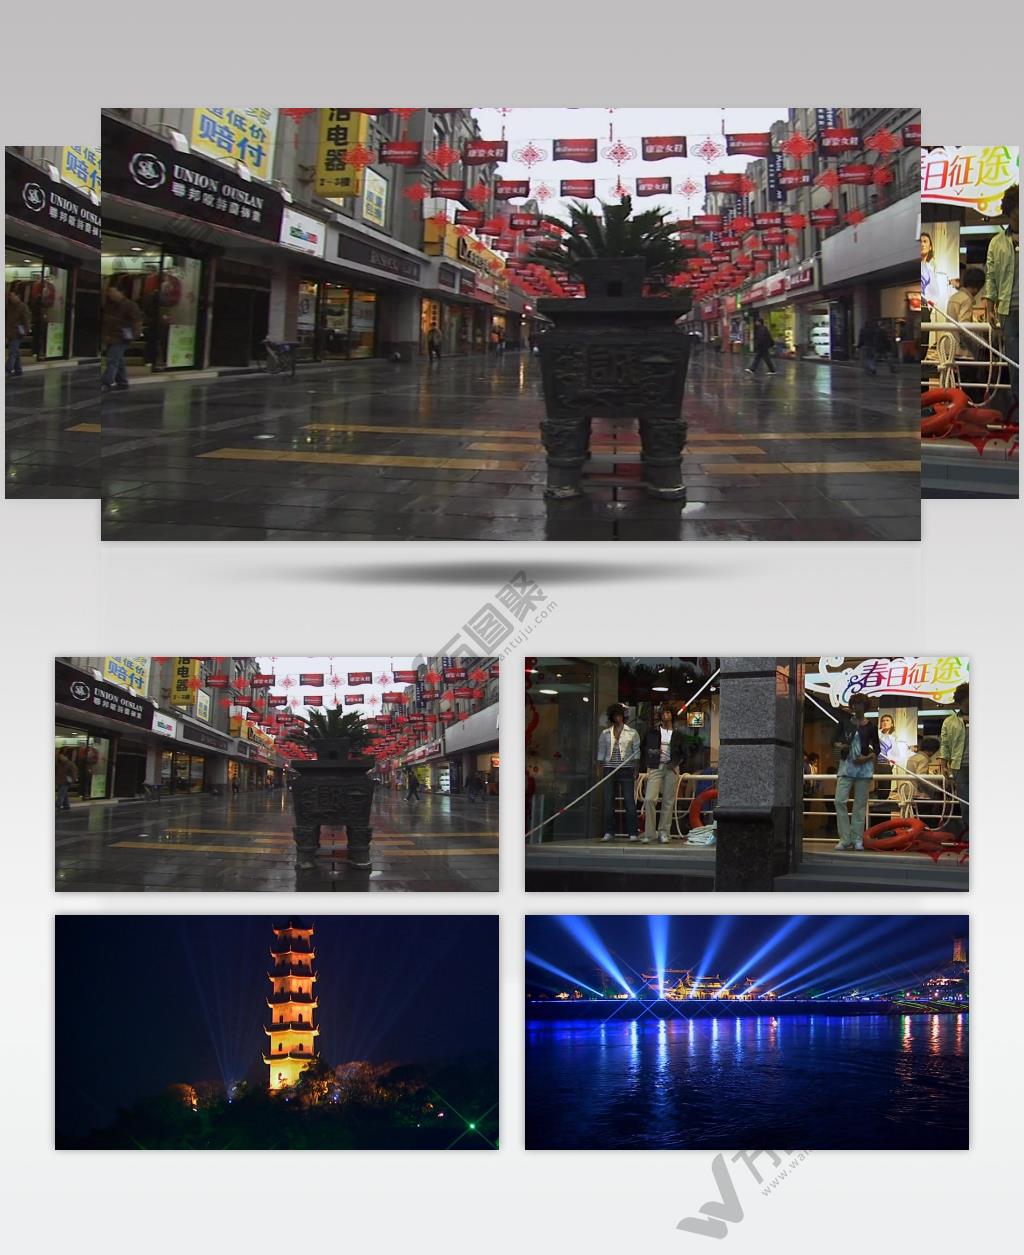 温州市风景+商场夜景+城市风貌中国名胜风景标志性景点高清视频素材